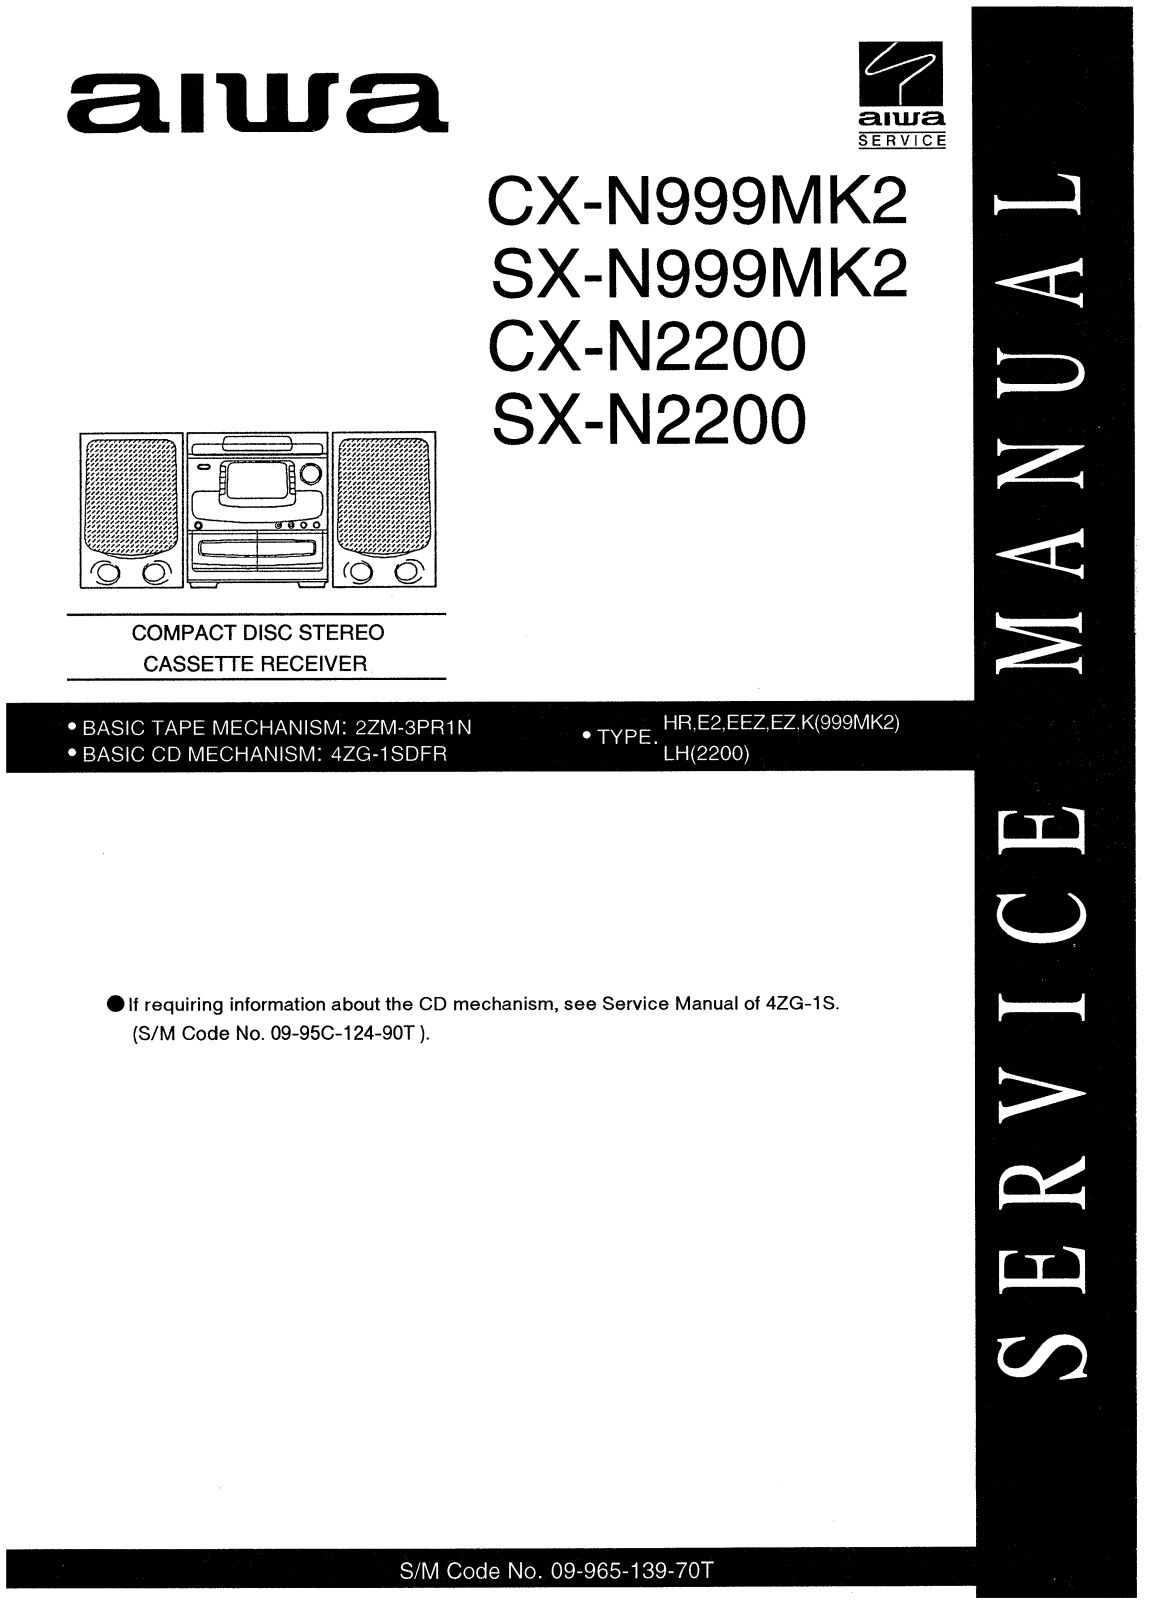 Aiwa CX-N999MK2, SX-N999MK2, CX-N2200, SX-N2200 Service Manual